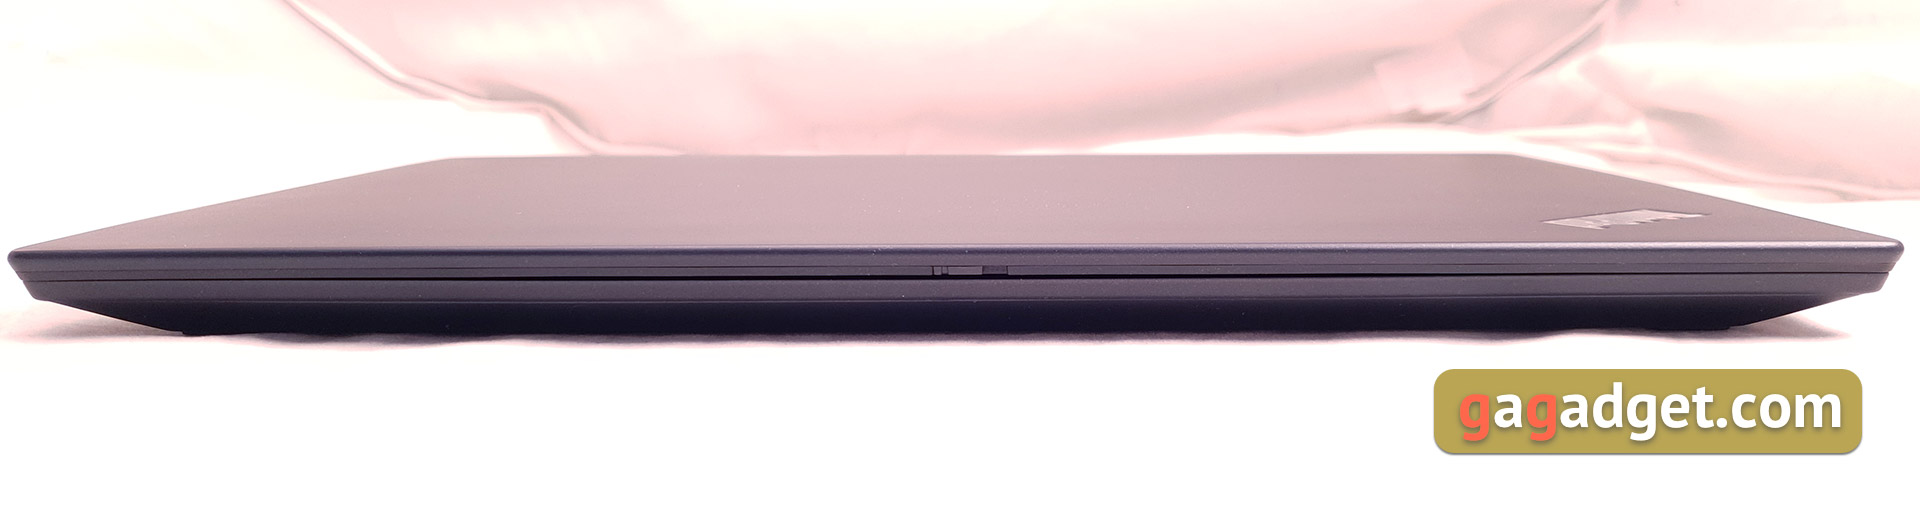 Recenzja Notebooka Lenovo ThinkPad T490s: szczery pracownik-12